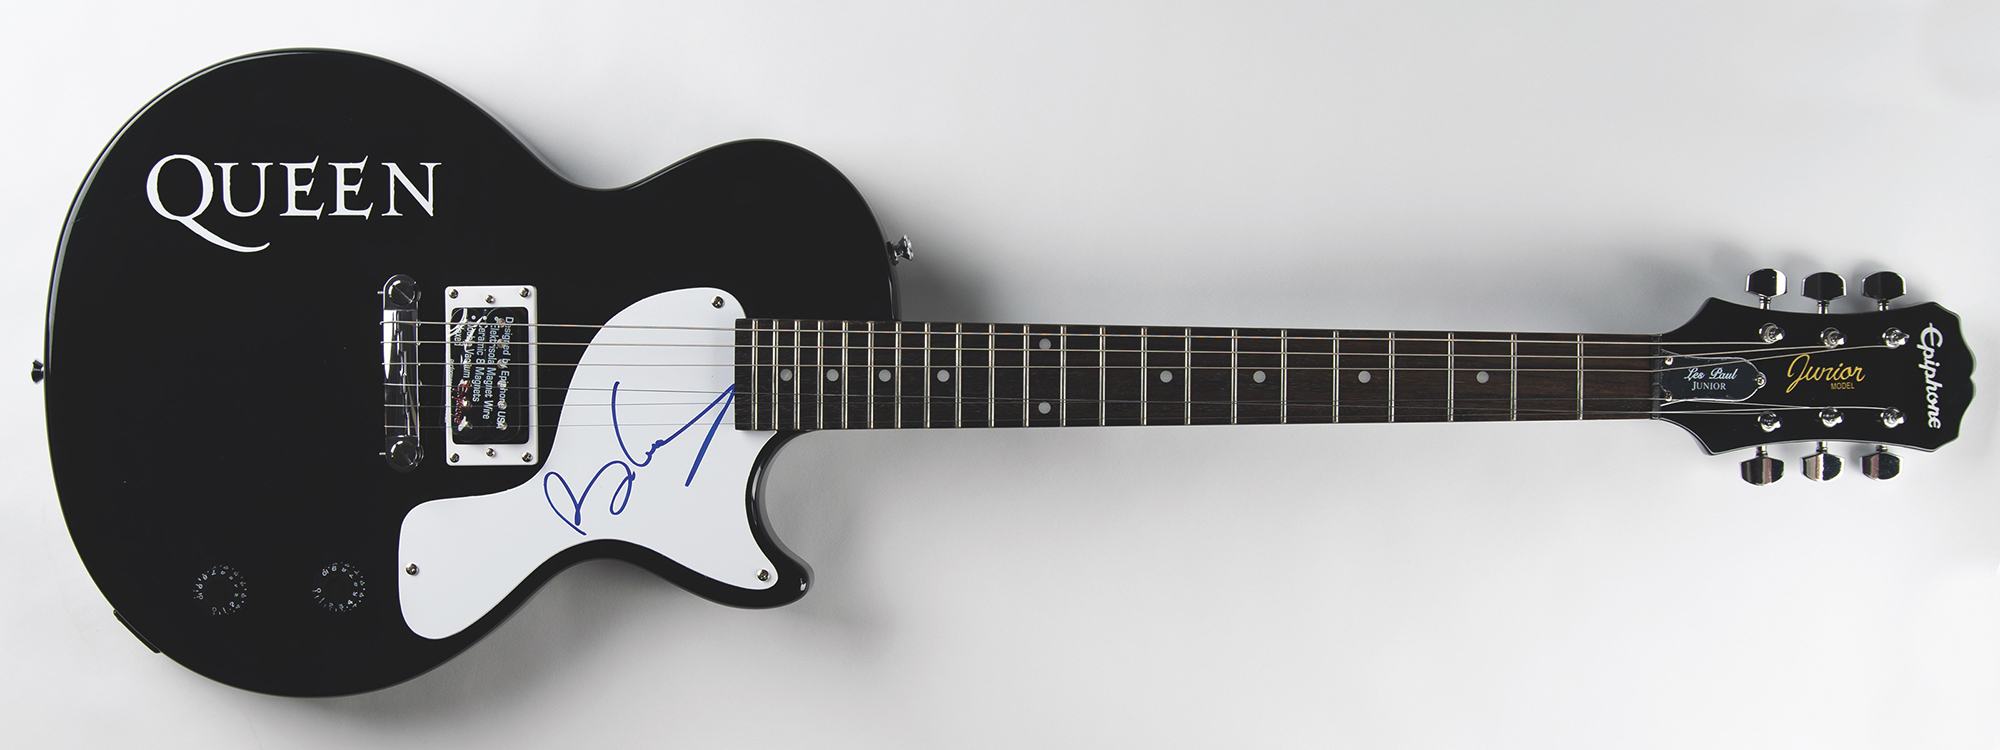 Lot #2164 Brian May Signed Guitar - Image 1